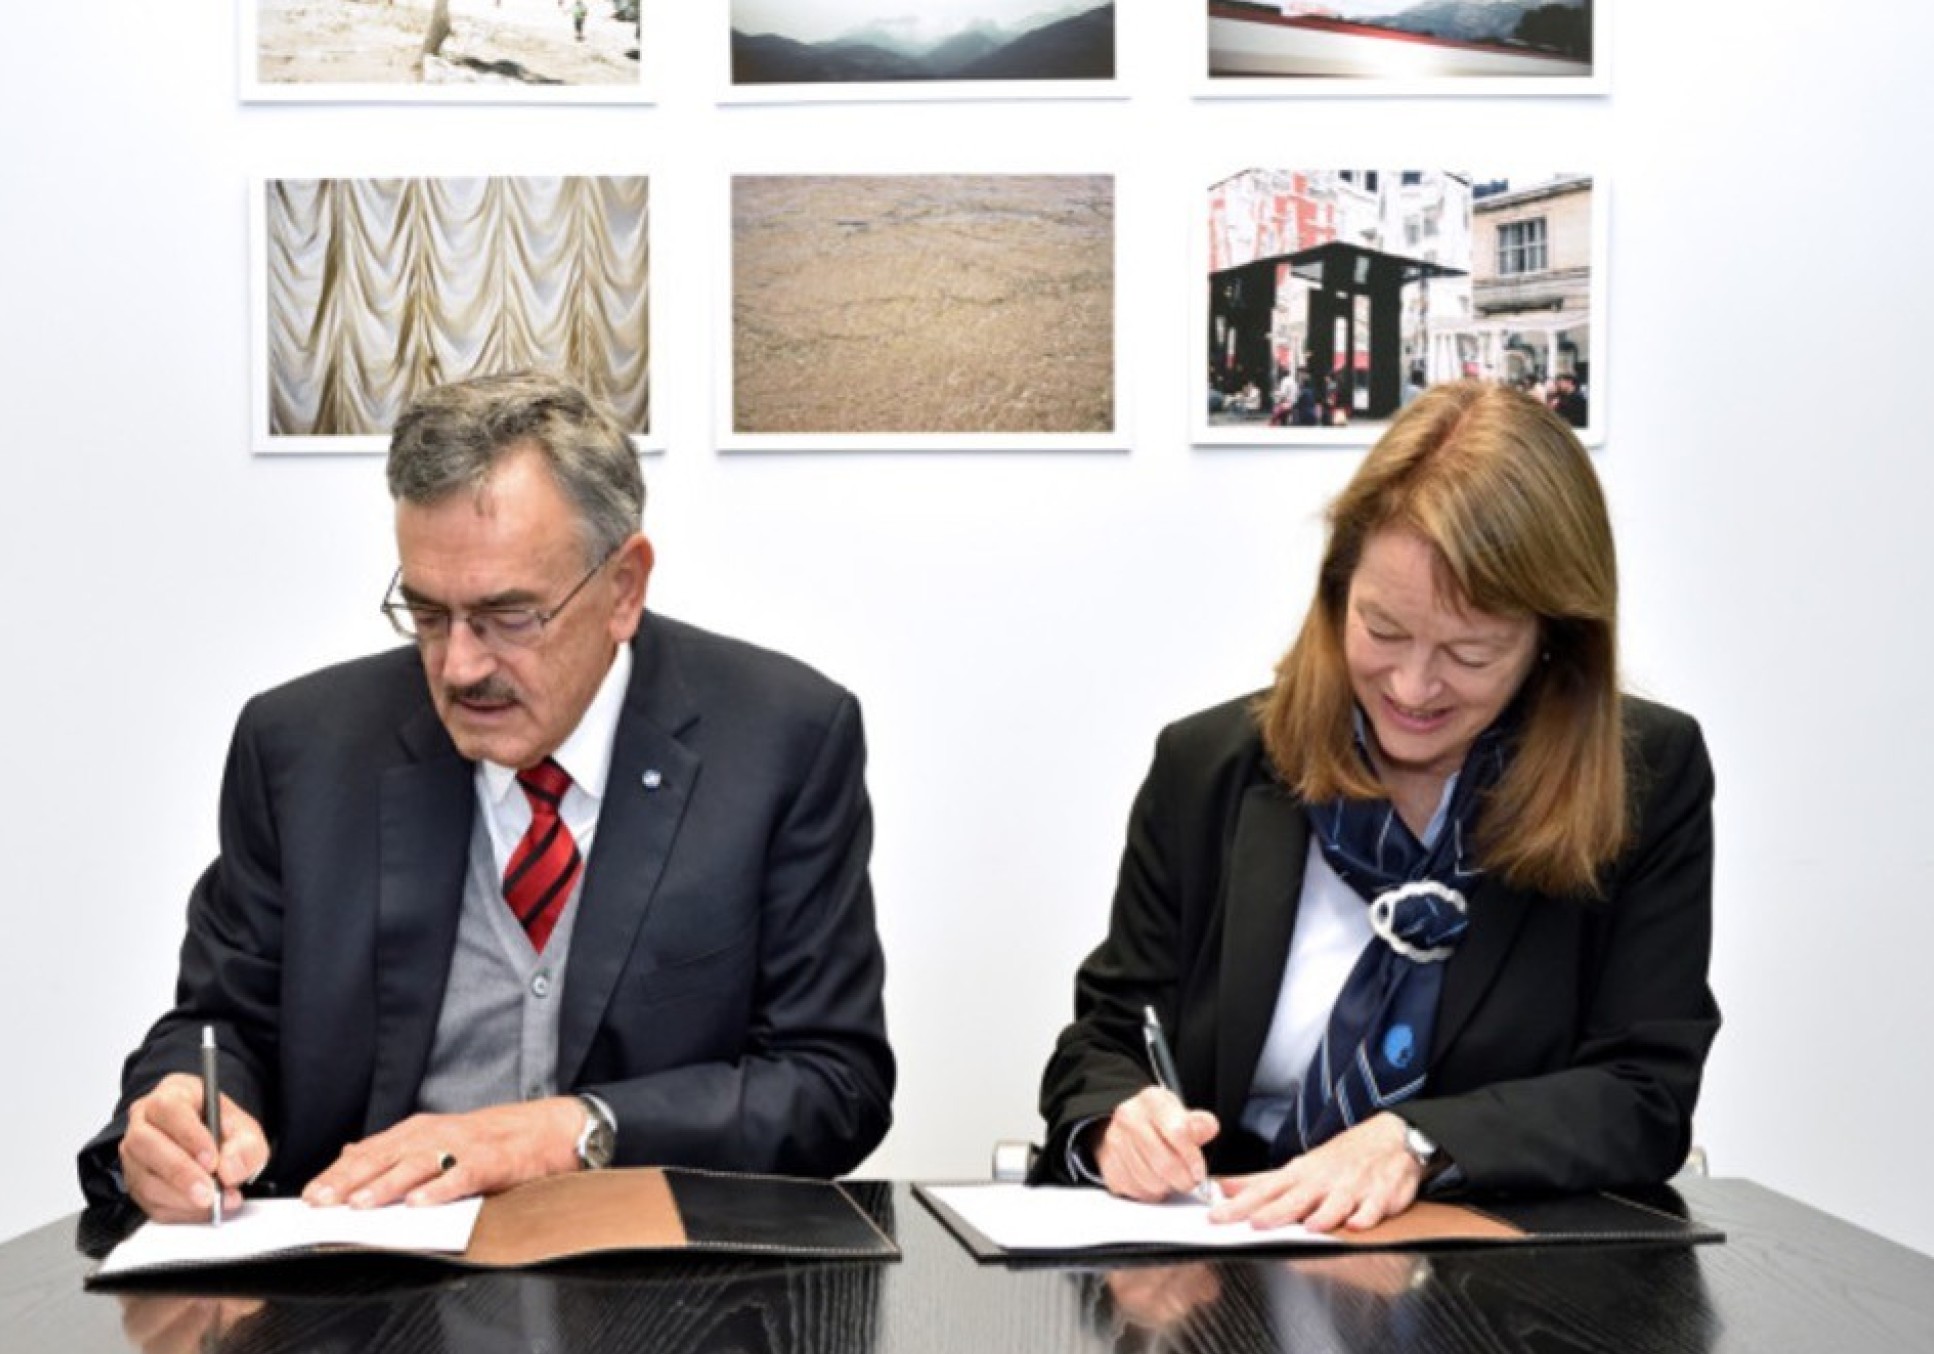 Le professeur Alice Gast, présidente d'Imperial, et le professeur Wolfgang Herrman, alors président de TUM, ont signé le partenariat début 2019